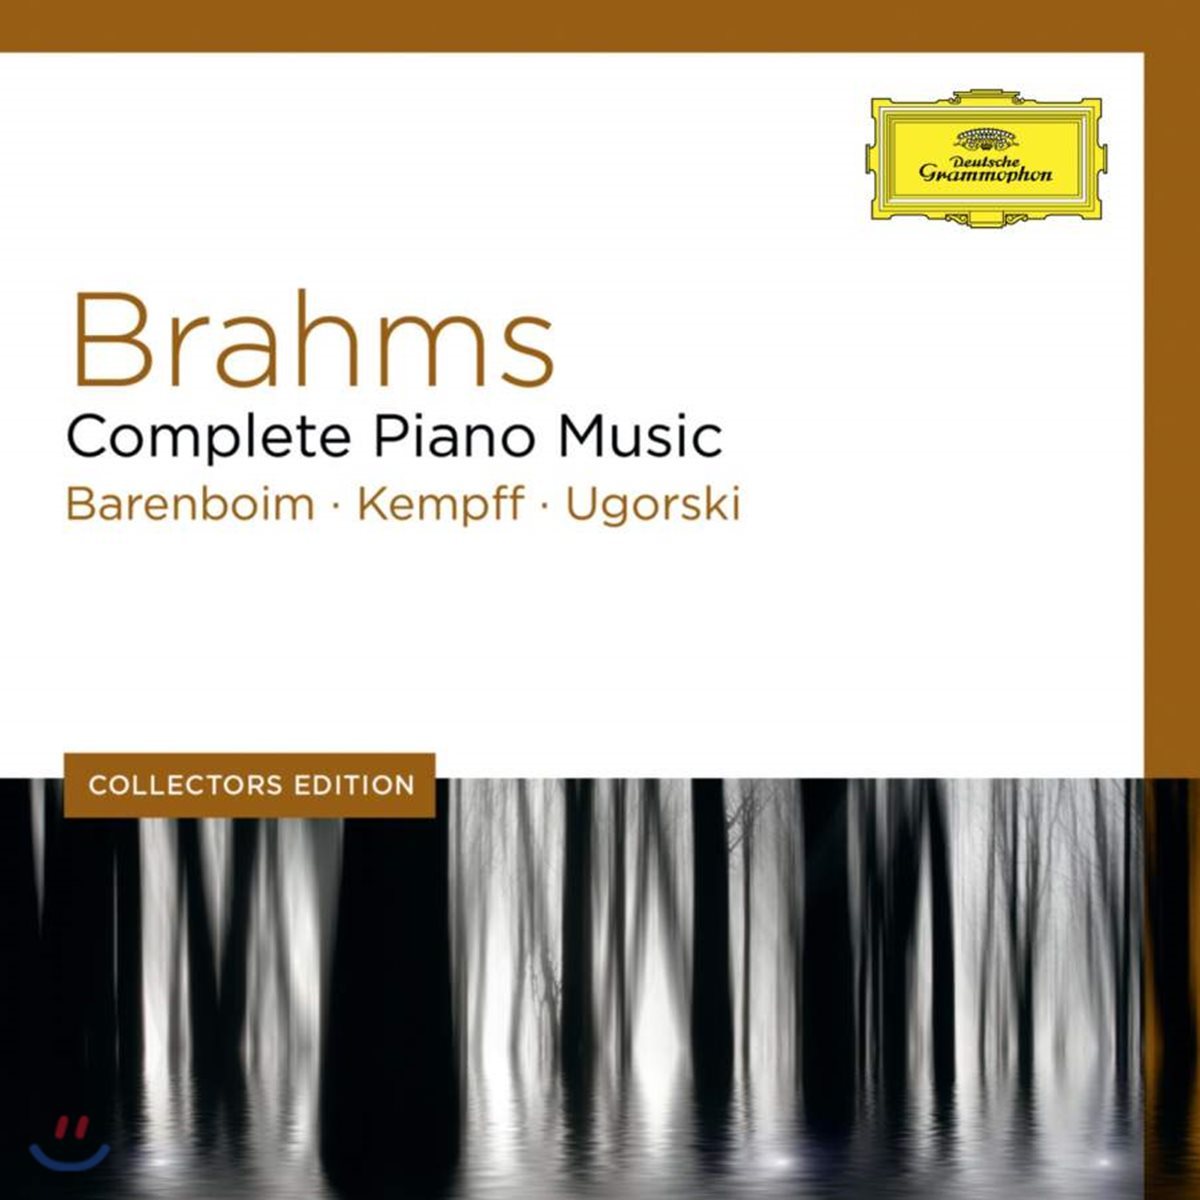 브람스: 피아노 작품 전곡 (Brahms: Complete Piano Music)